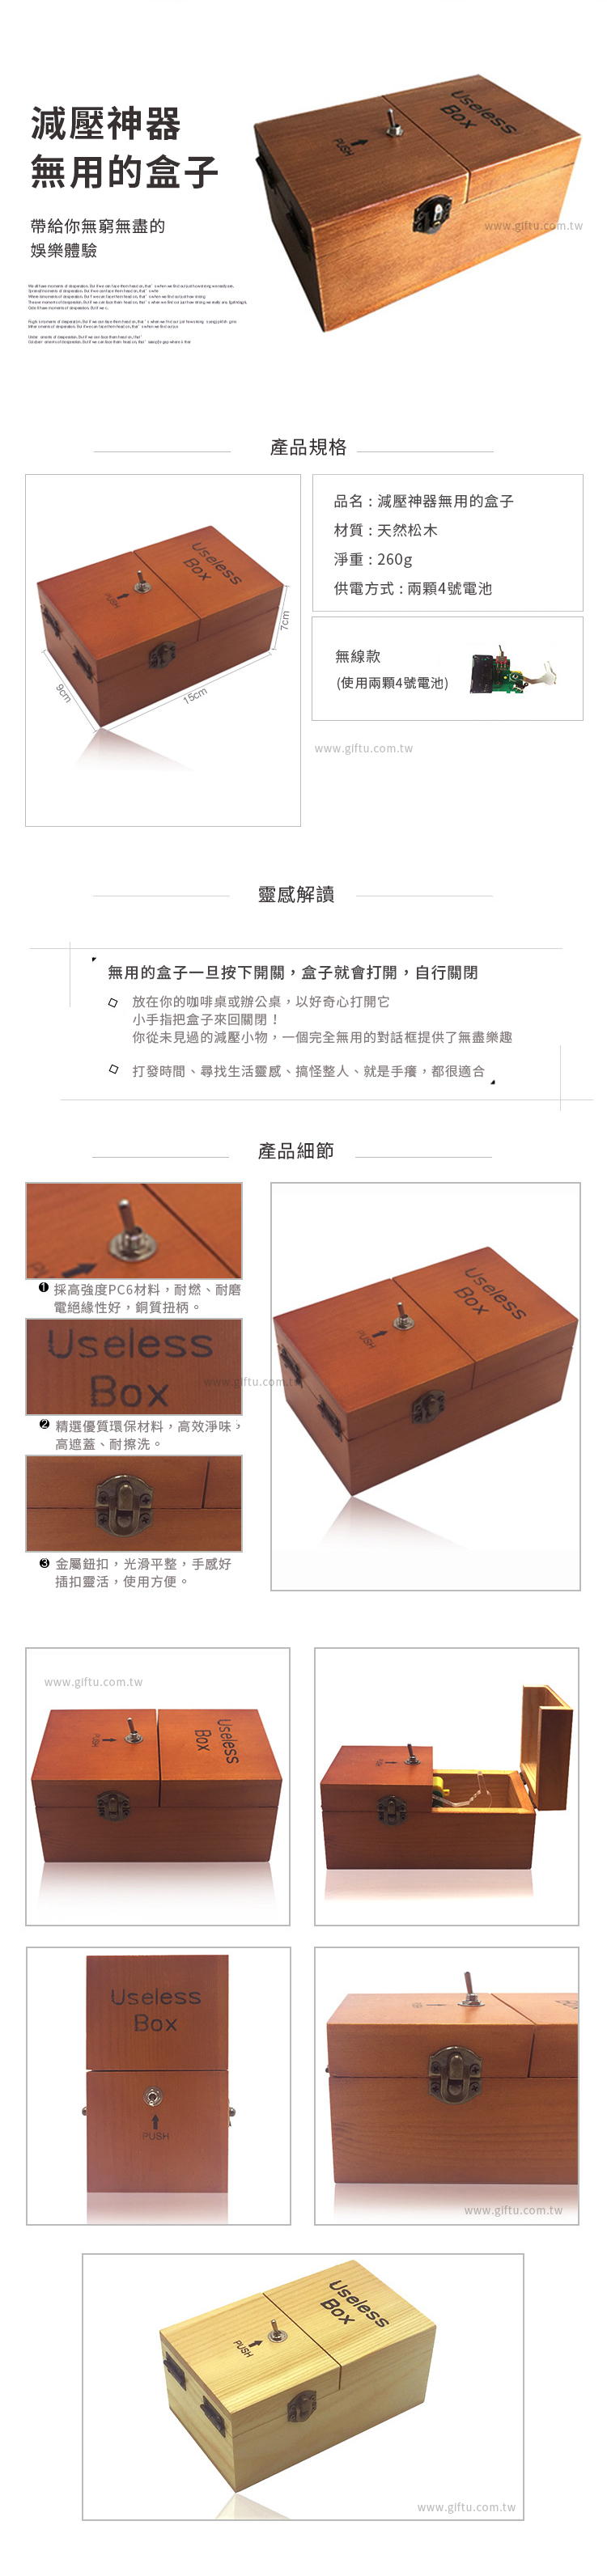 【3/29~5/31畢業季88折優惠】創意小物館 減壓神器無用的盒子 Useless Box 深棕